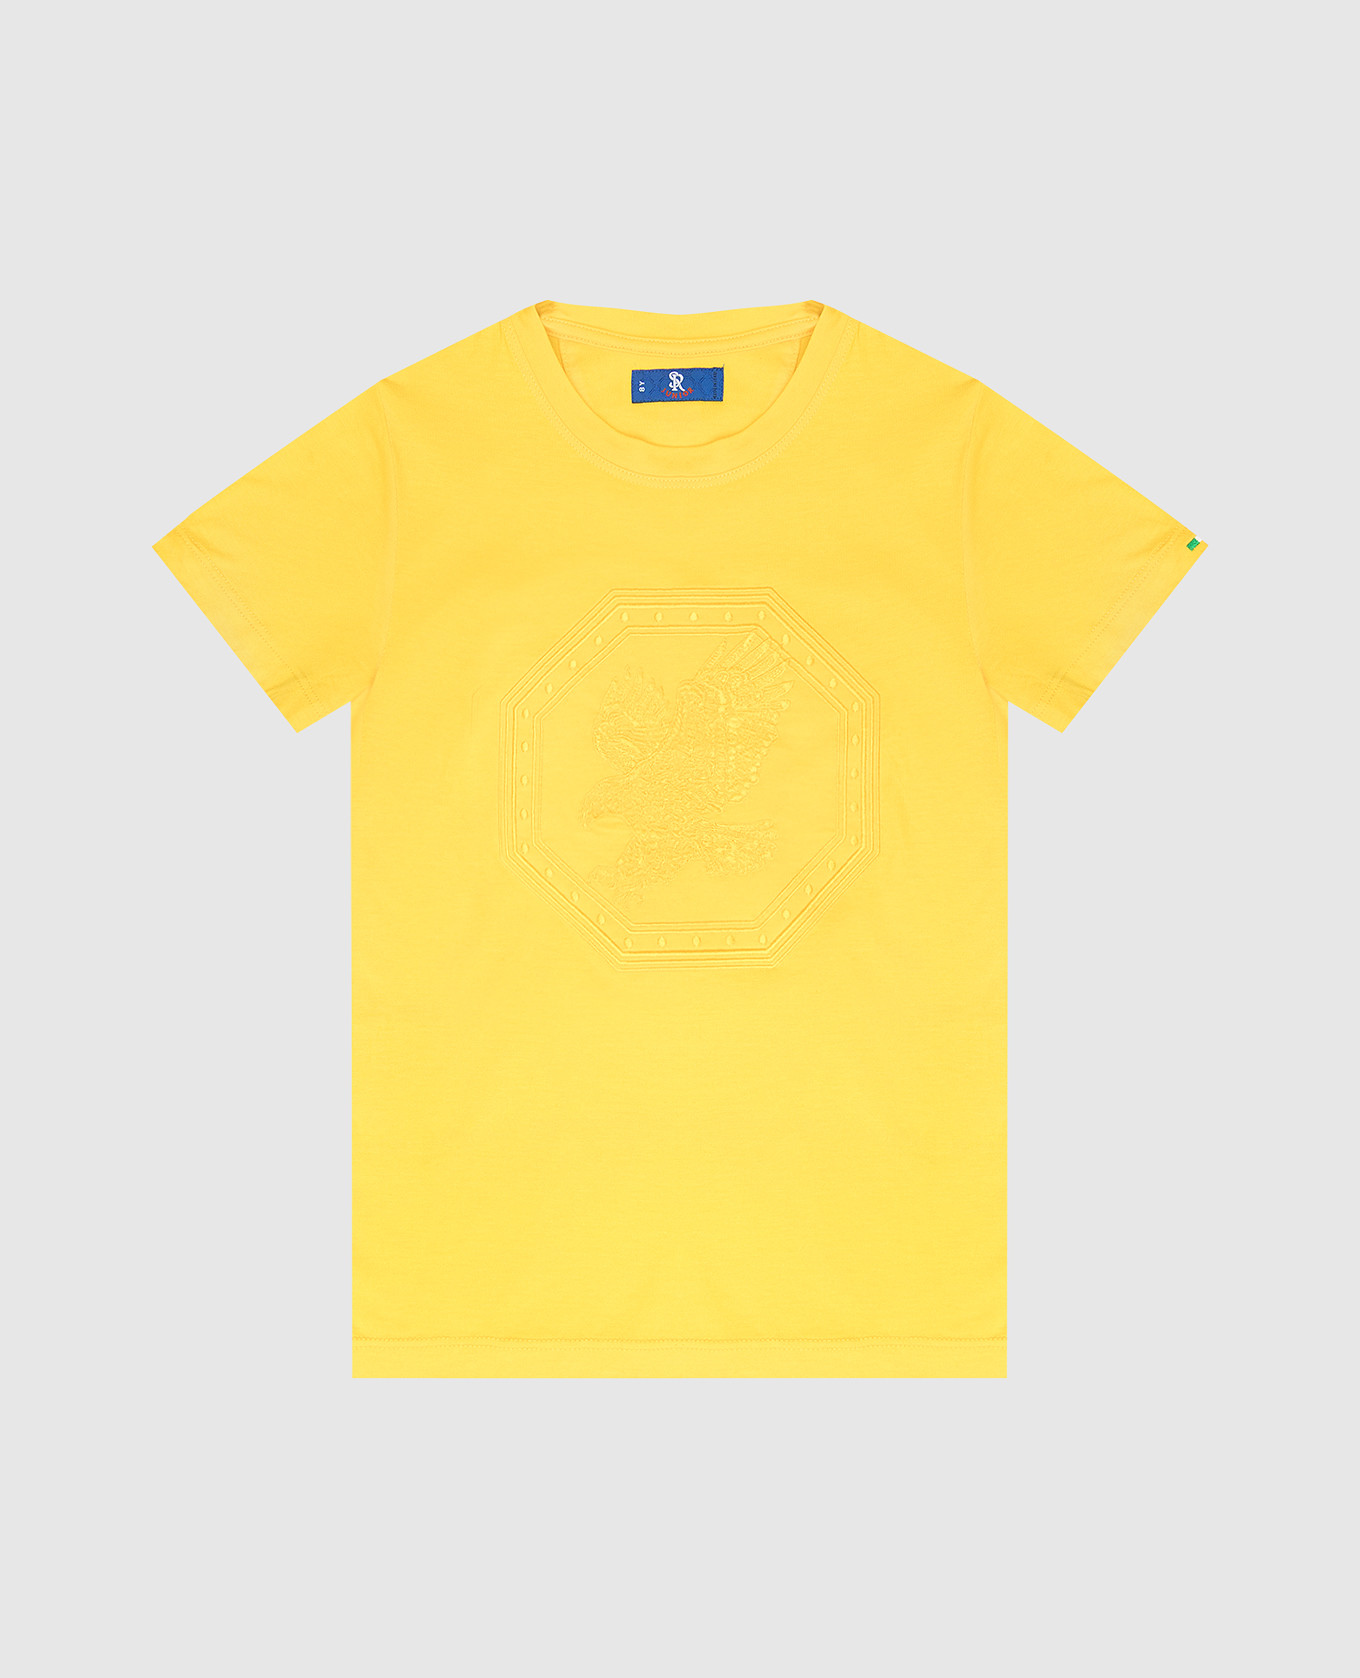 Детская желтая футболка с вышивкой в виде орла